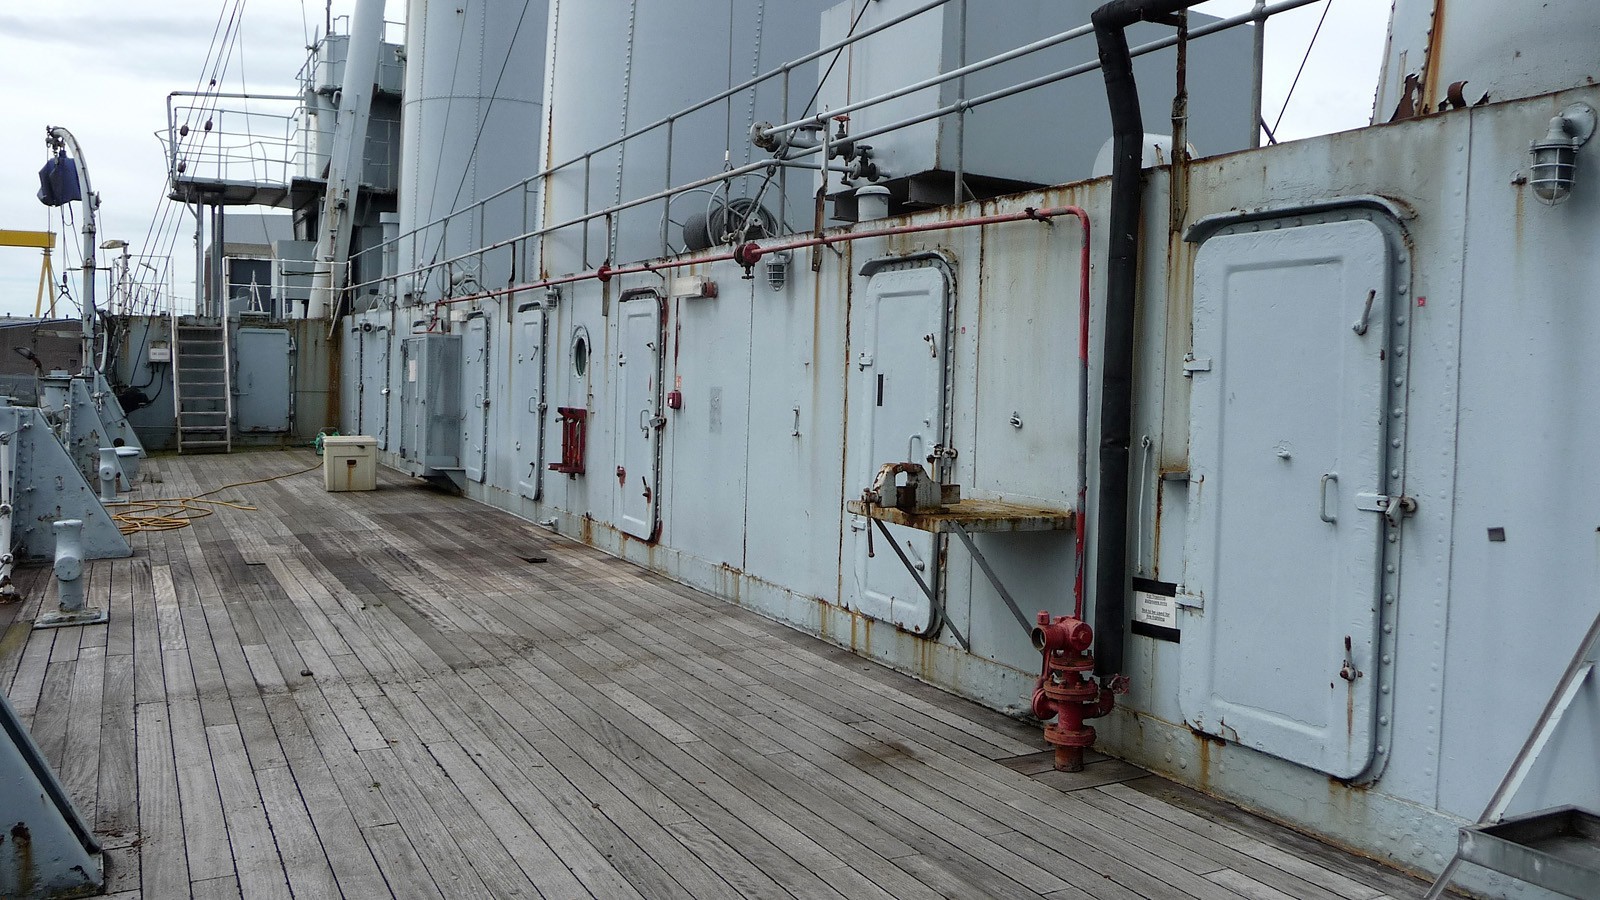 Surviving paint on HMS Caroline